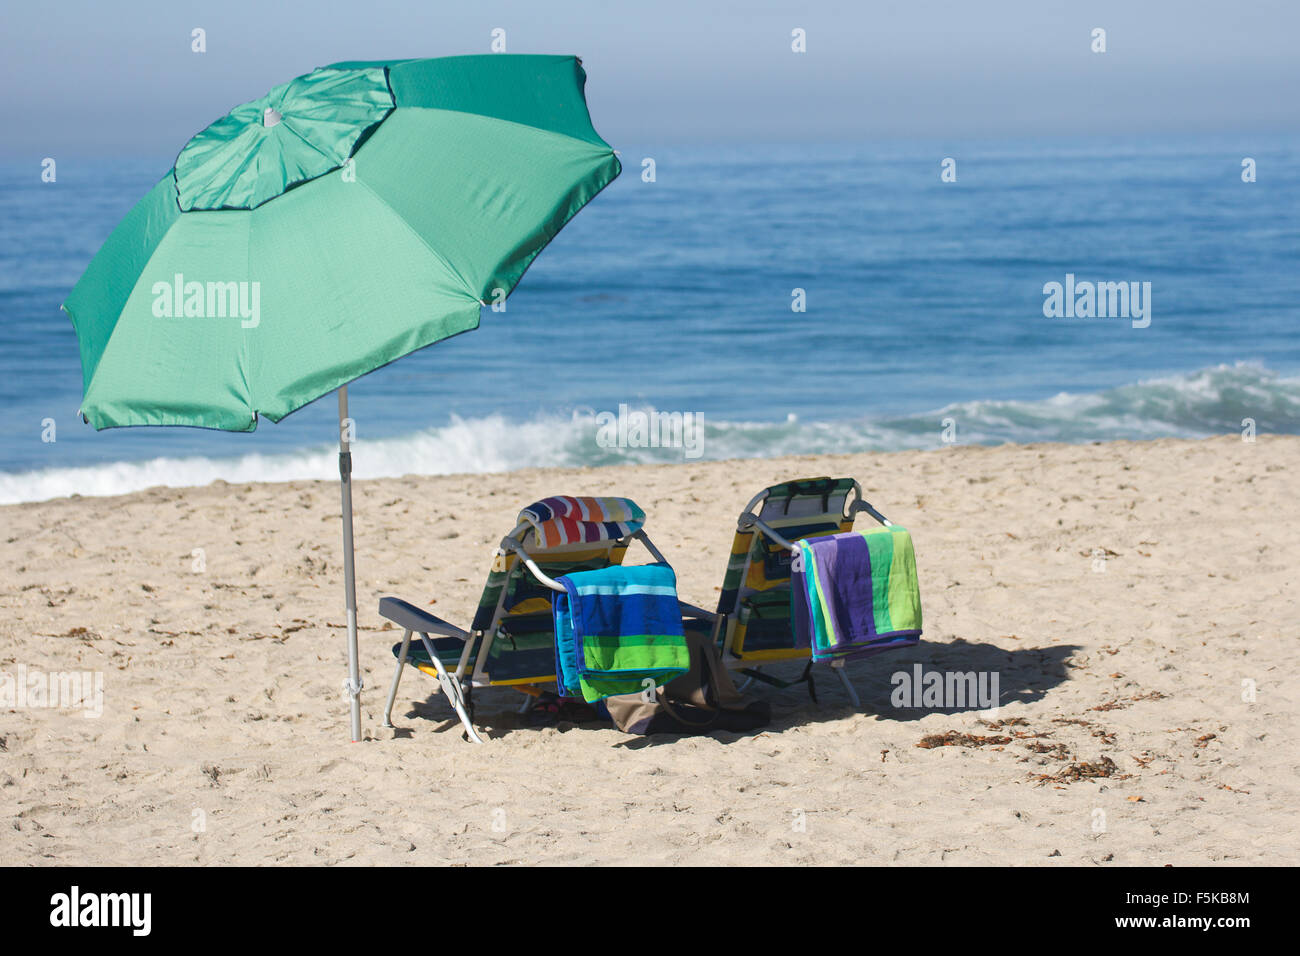 Sedie vuote in una scena di spiaggia dando l'idea di ritiro. Foto Stock